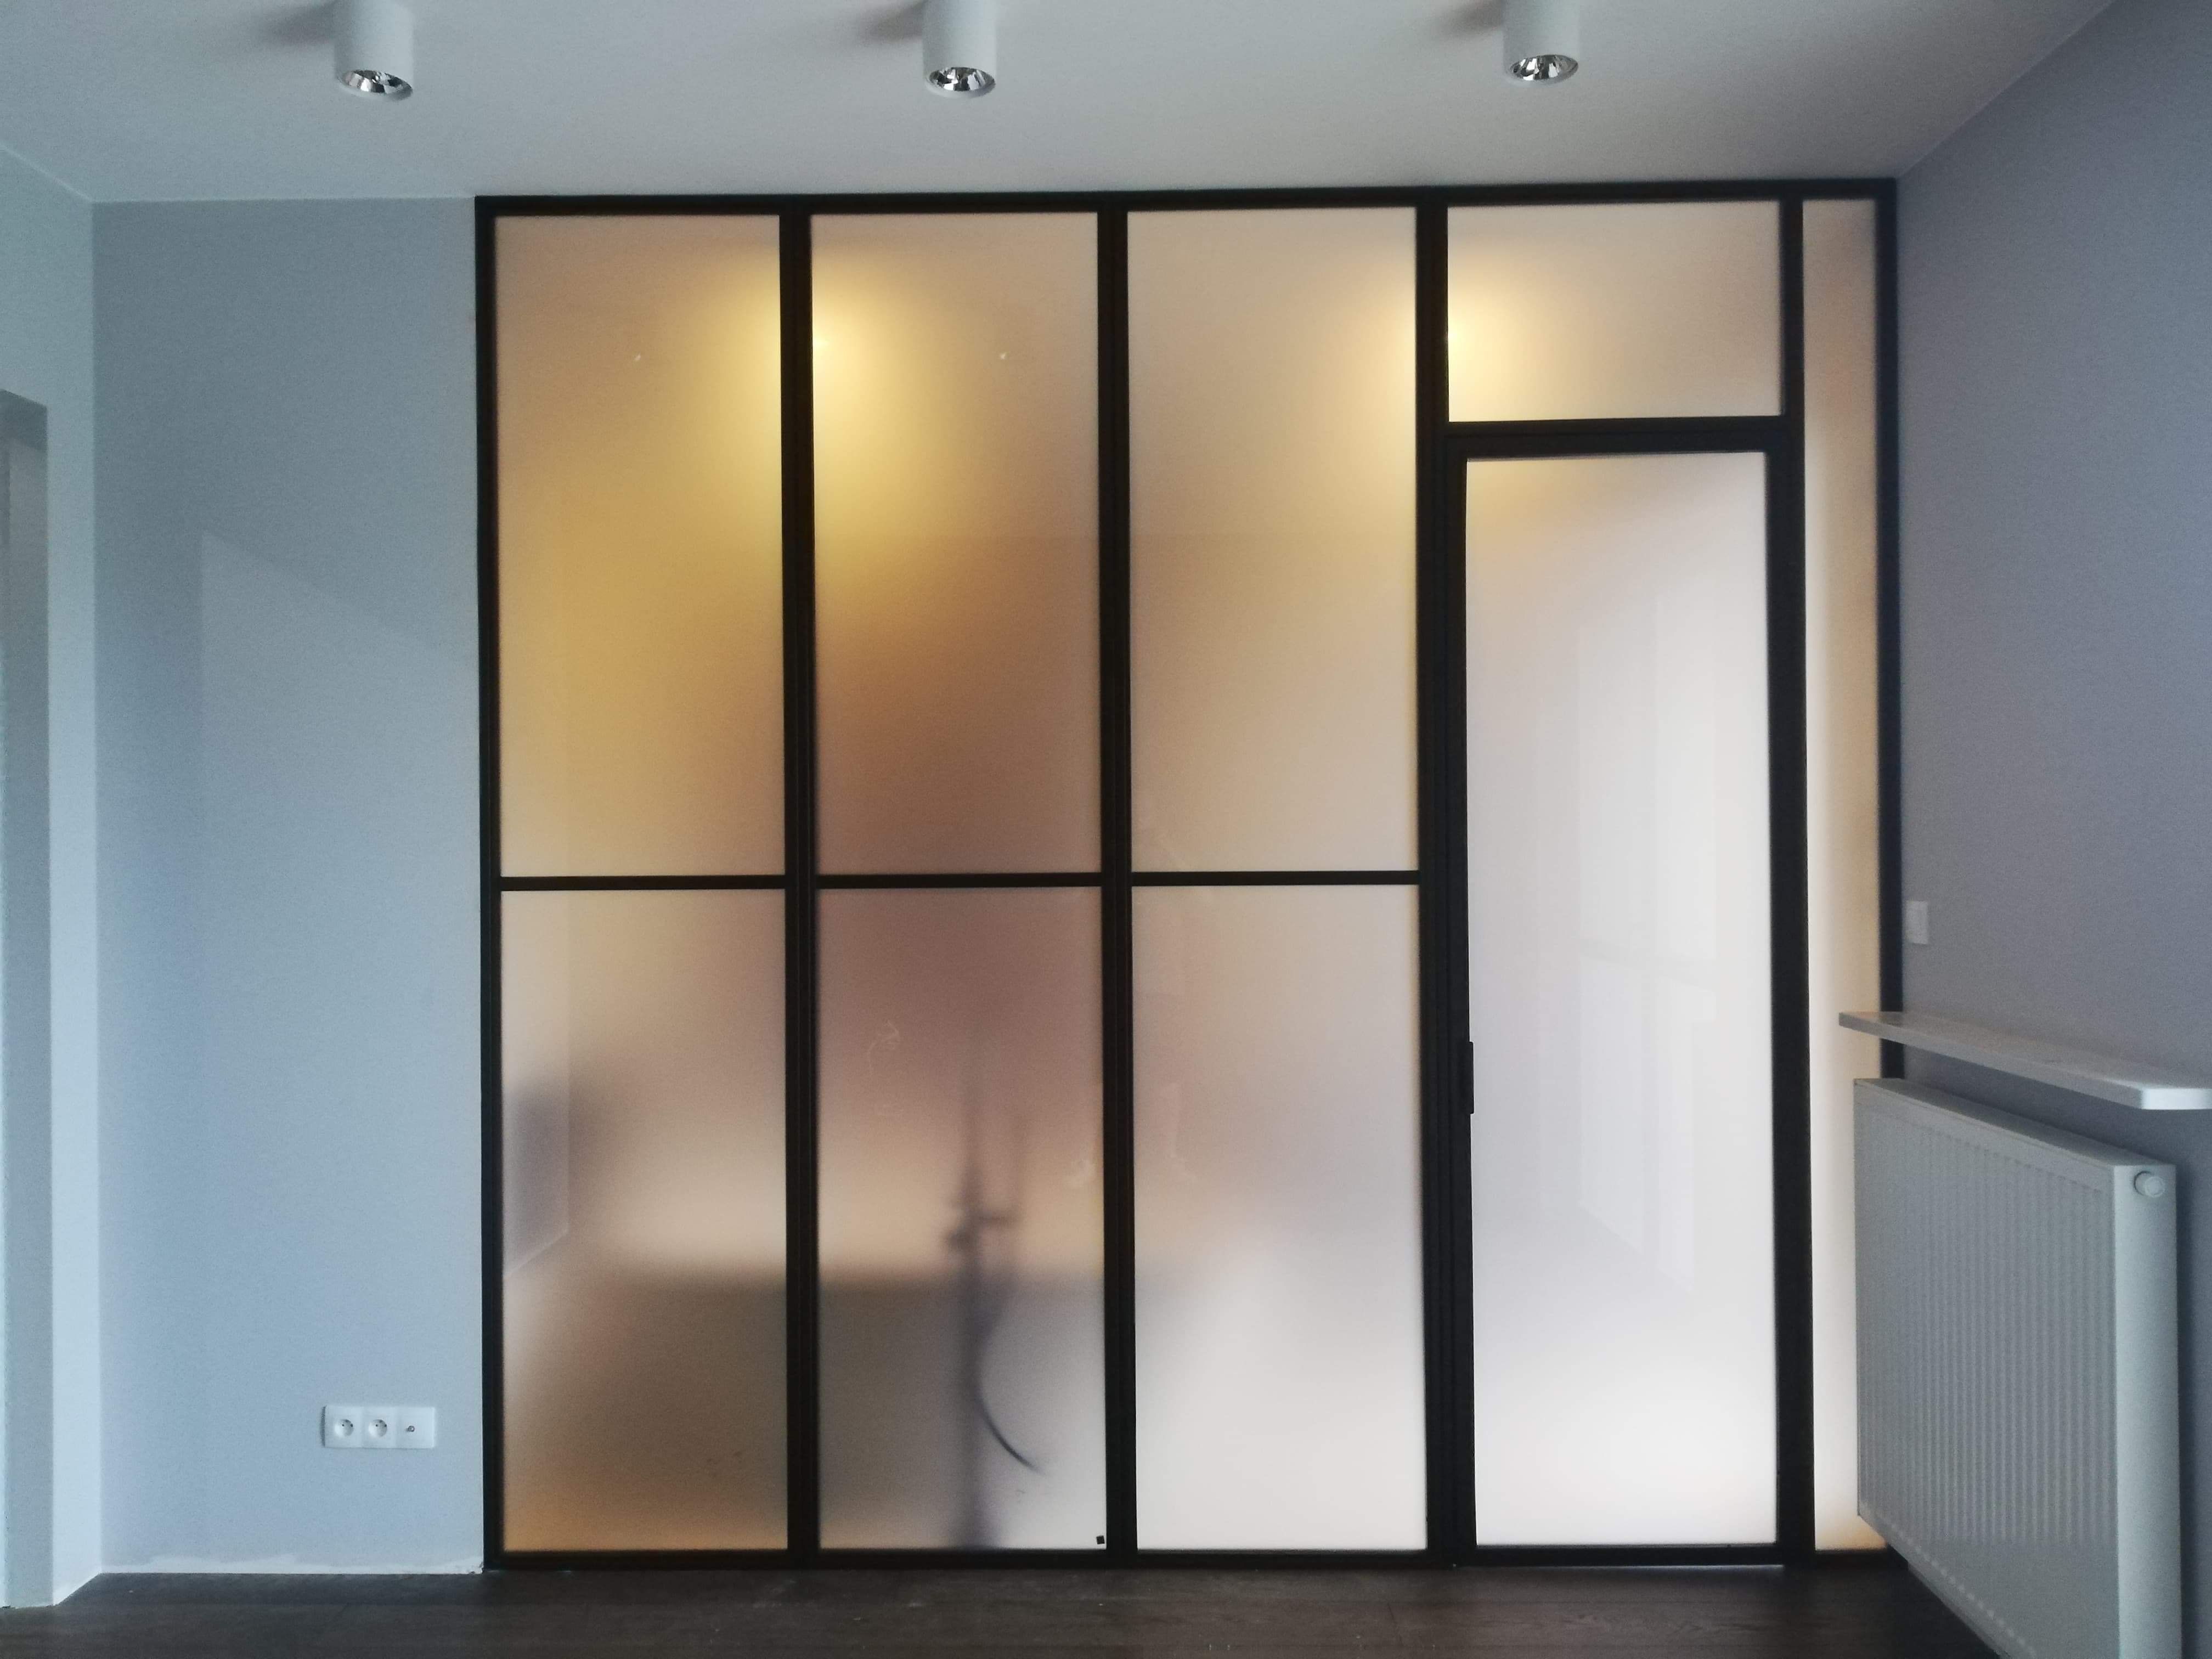 Ściana ze szkłem szybami mlecznymi awowymi w metalowych ramach stylu loftowym industrialnym loft Filip Ch. | Warszawa